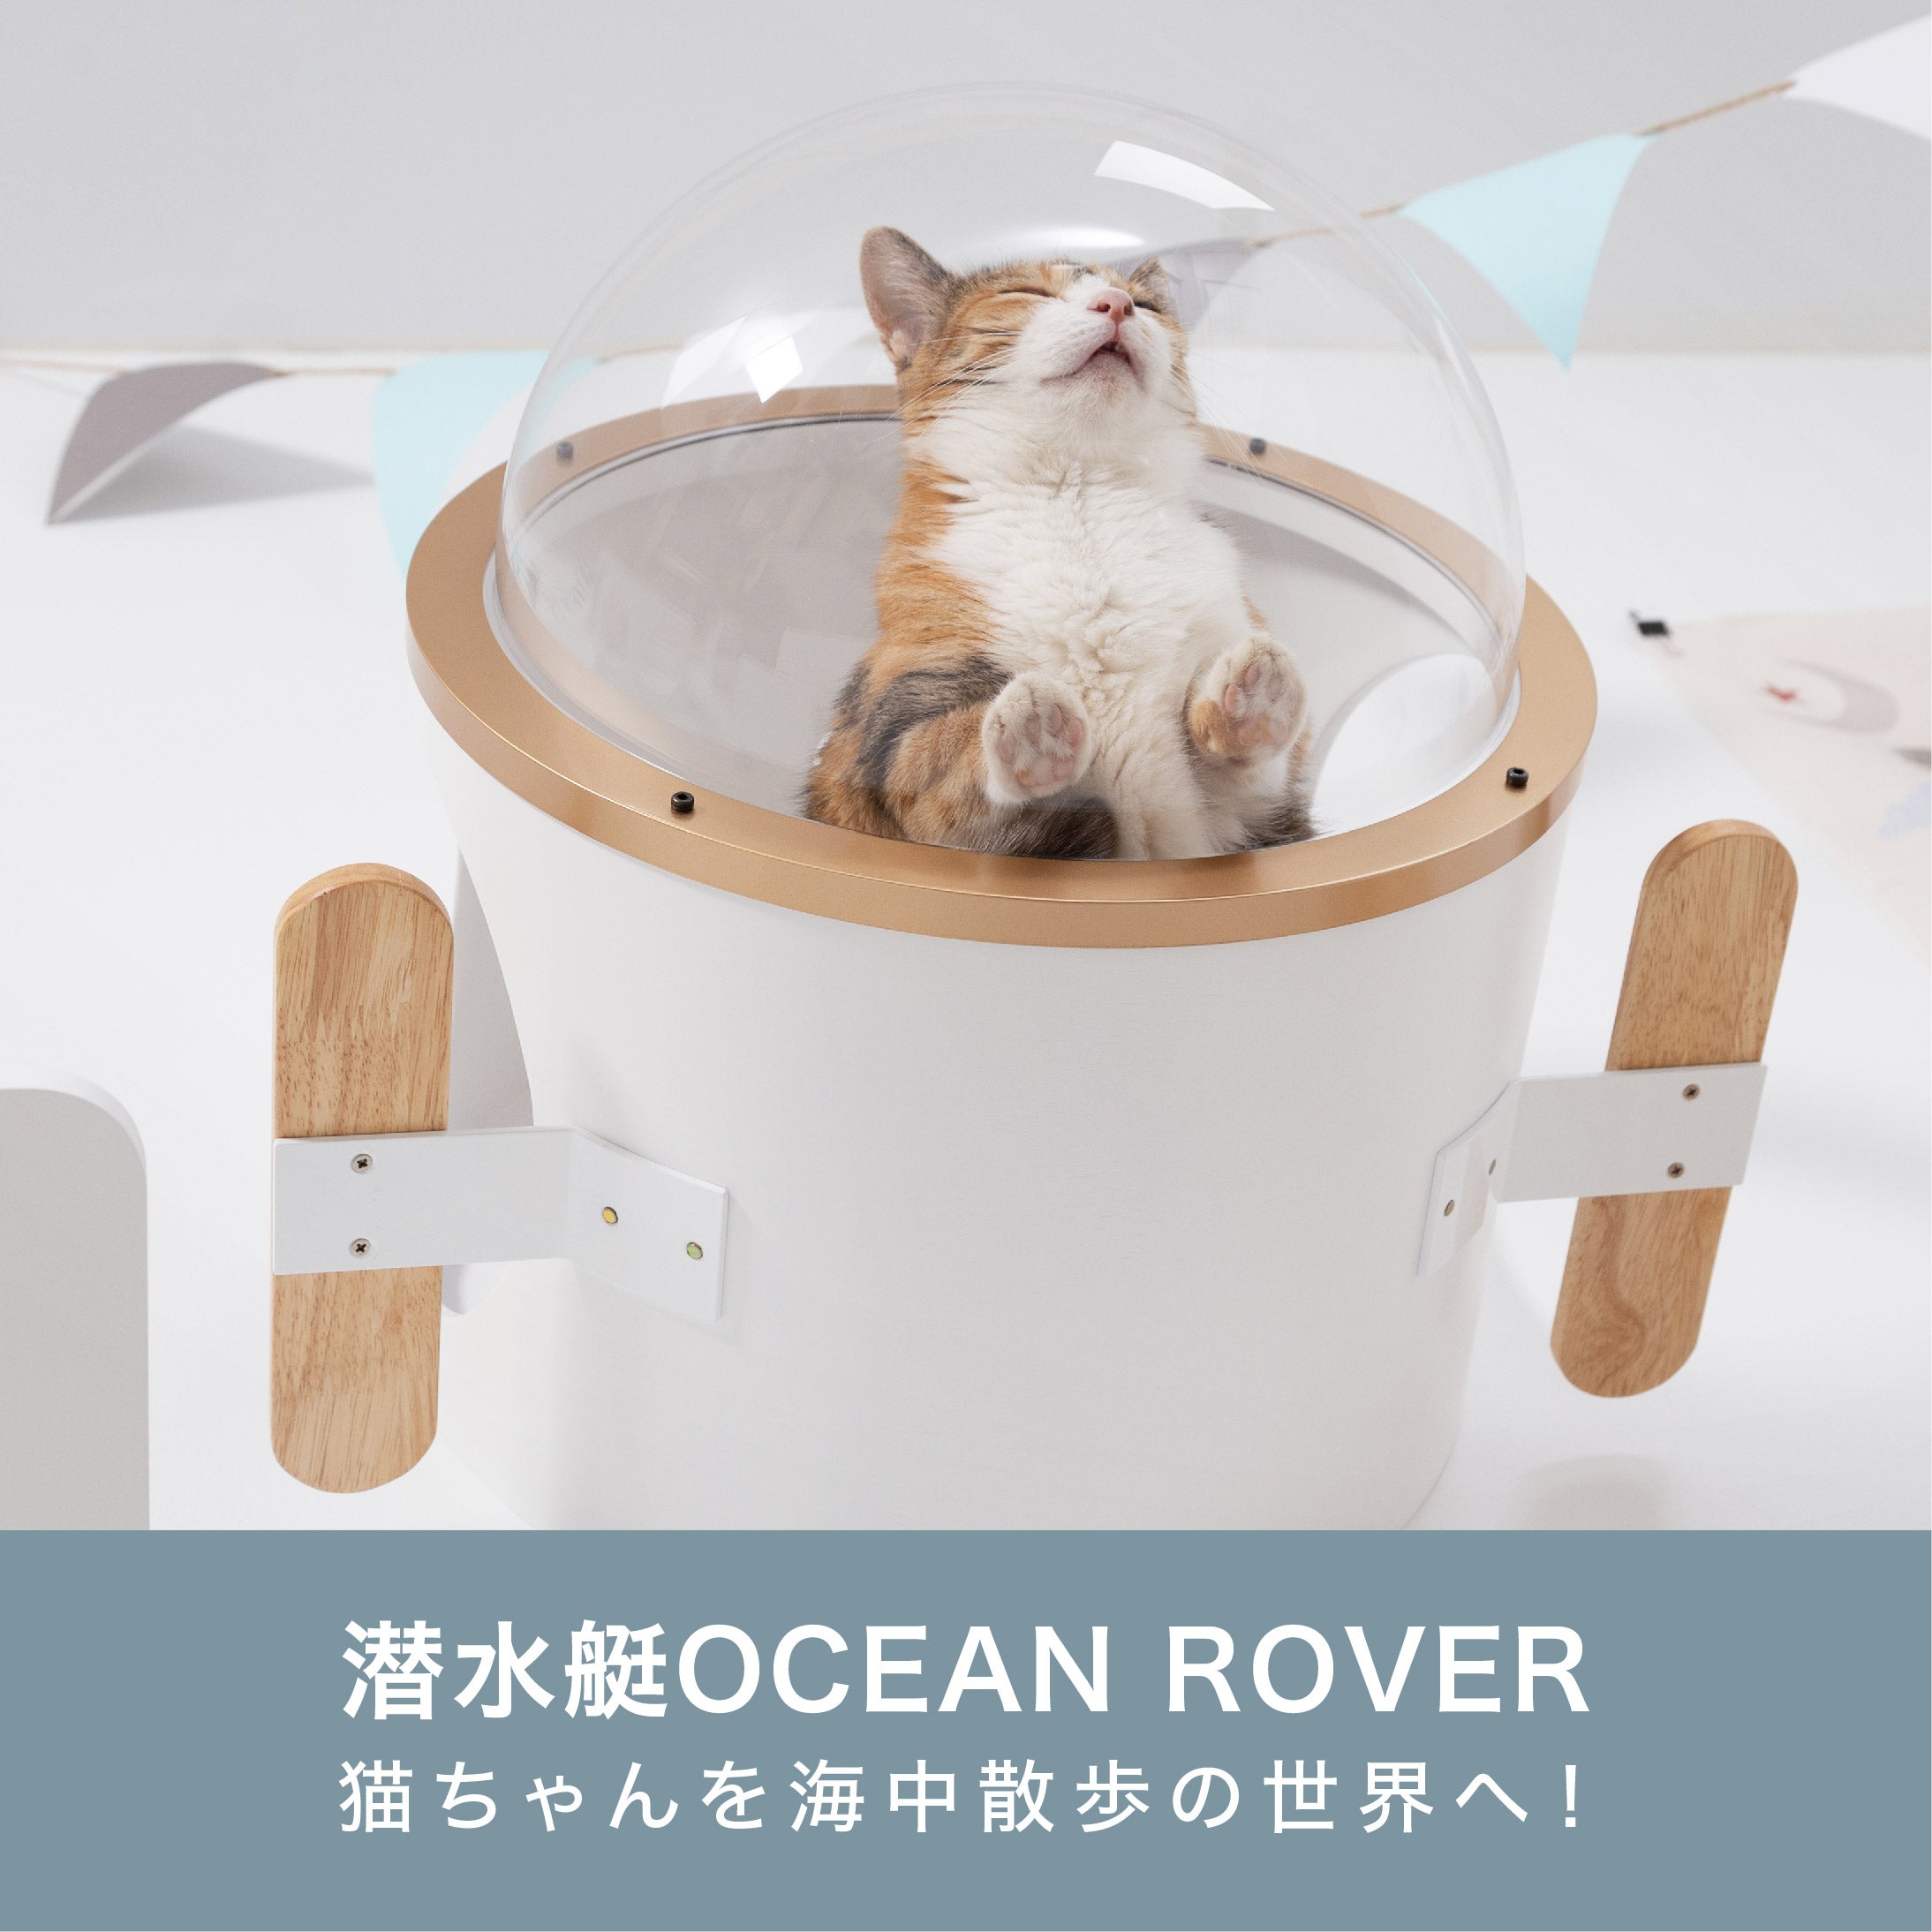 【猫用ベッド】MYZOO-潜水艇Ocean rover/ホワイト